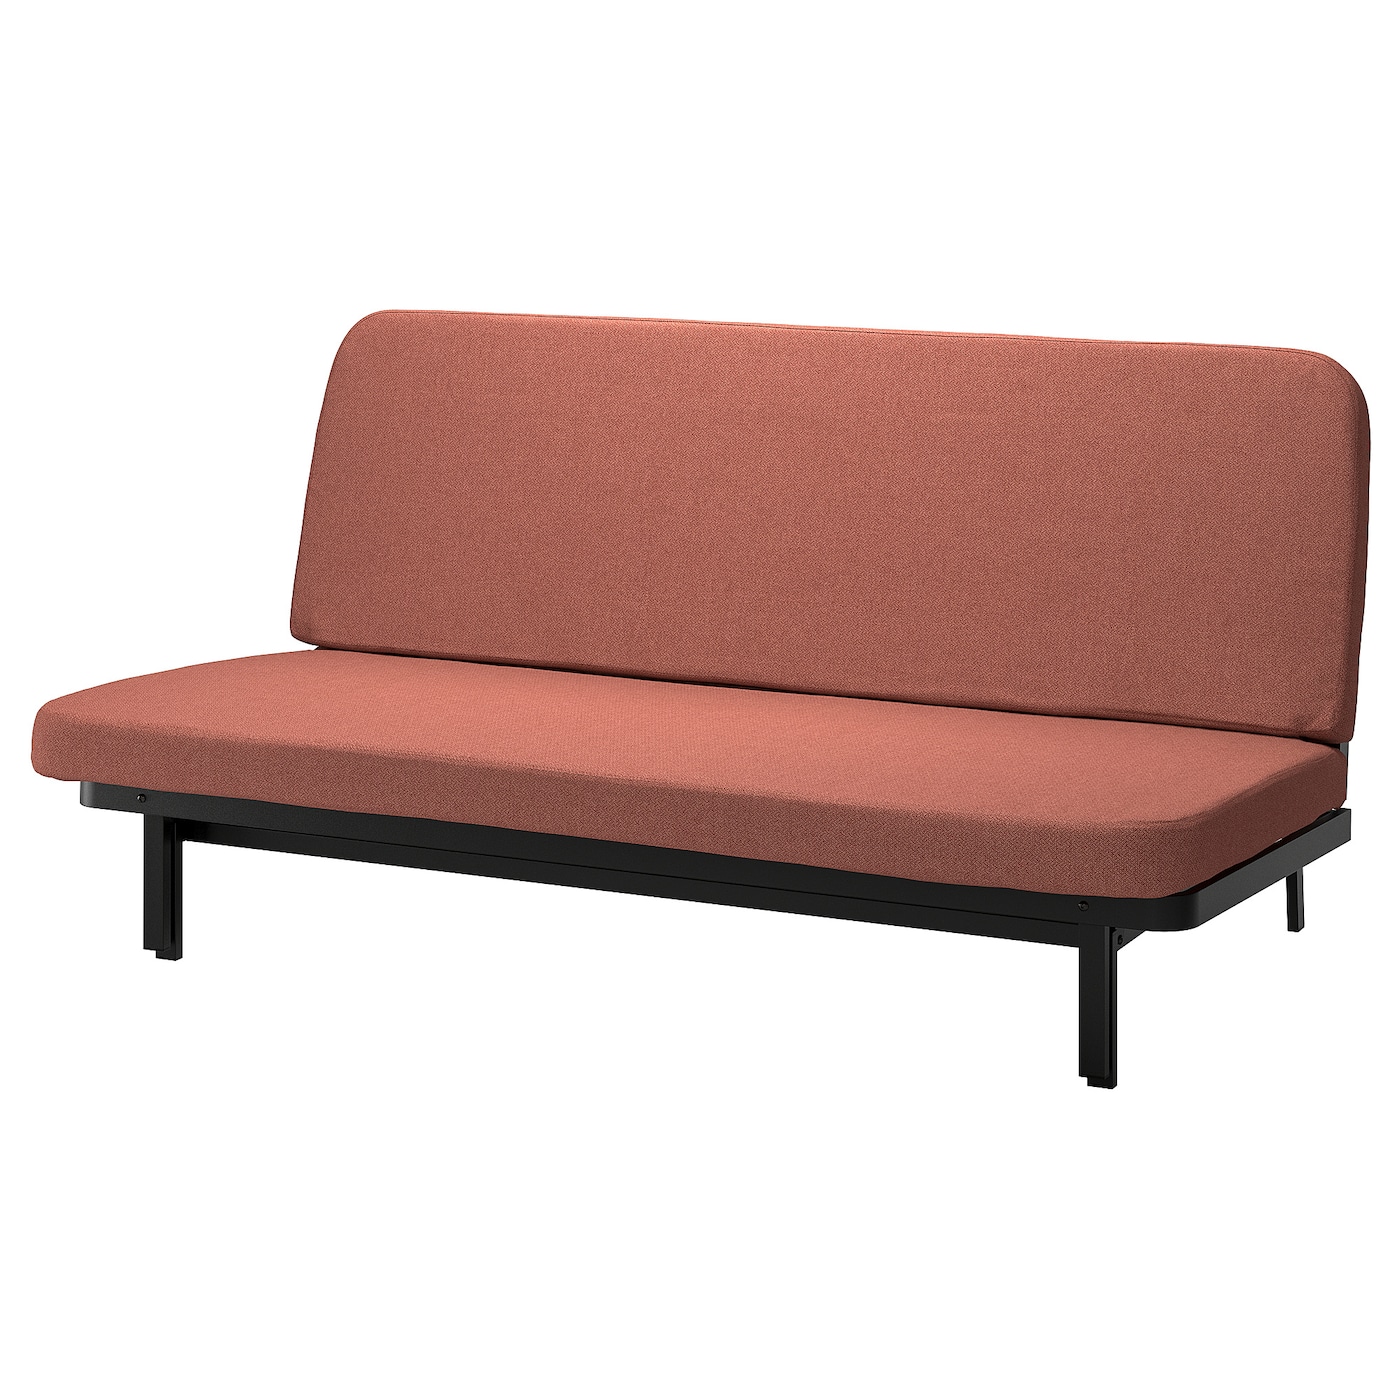 NYHAMN 3-местный диван-кровать, поролоновый матрас в комплекте/Скартофта красный/коричневый IKEA складная двухцелевая спинка плавающий ряд с сетчатым гамаком водный развлекательный шезлонг плавающая кровать диван